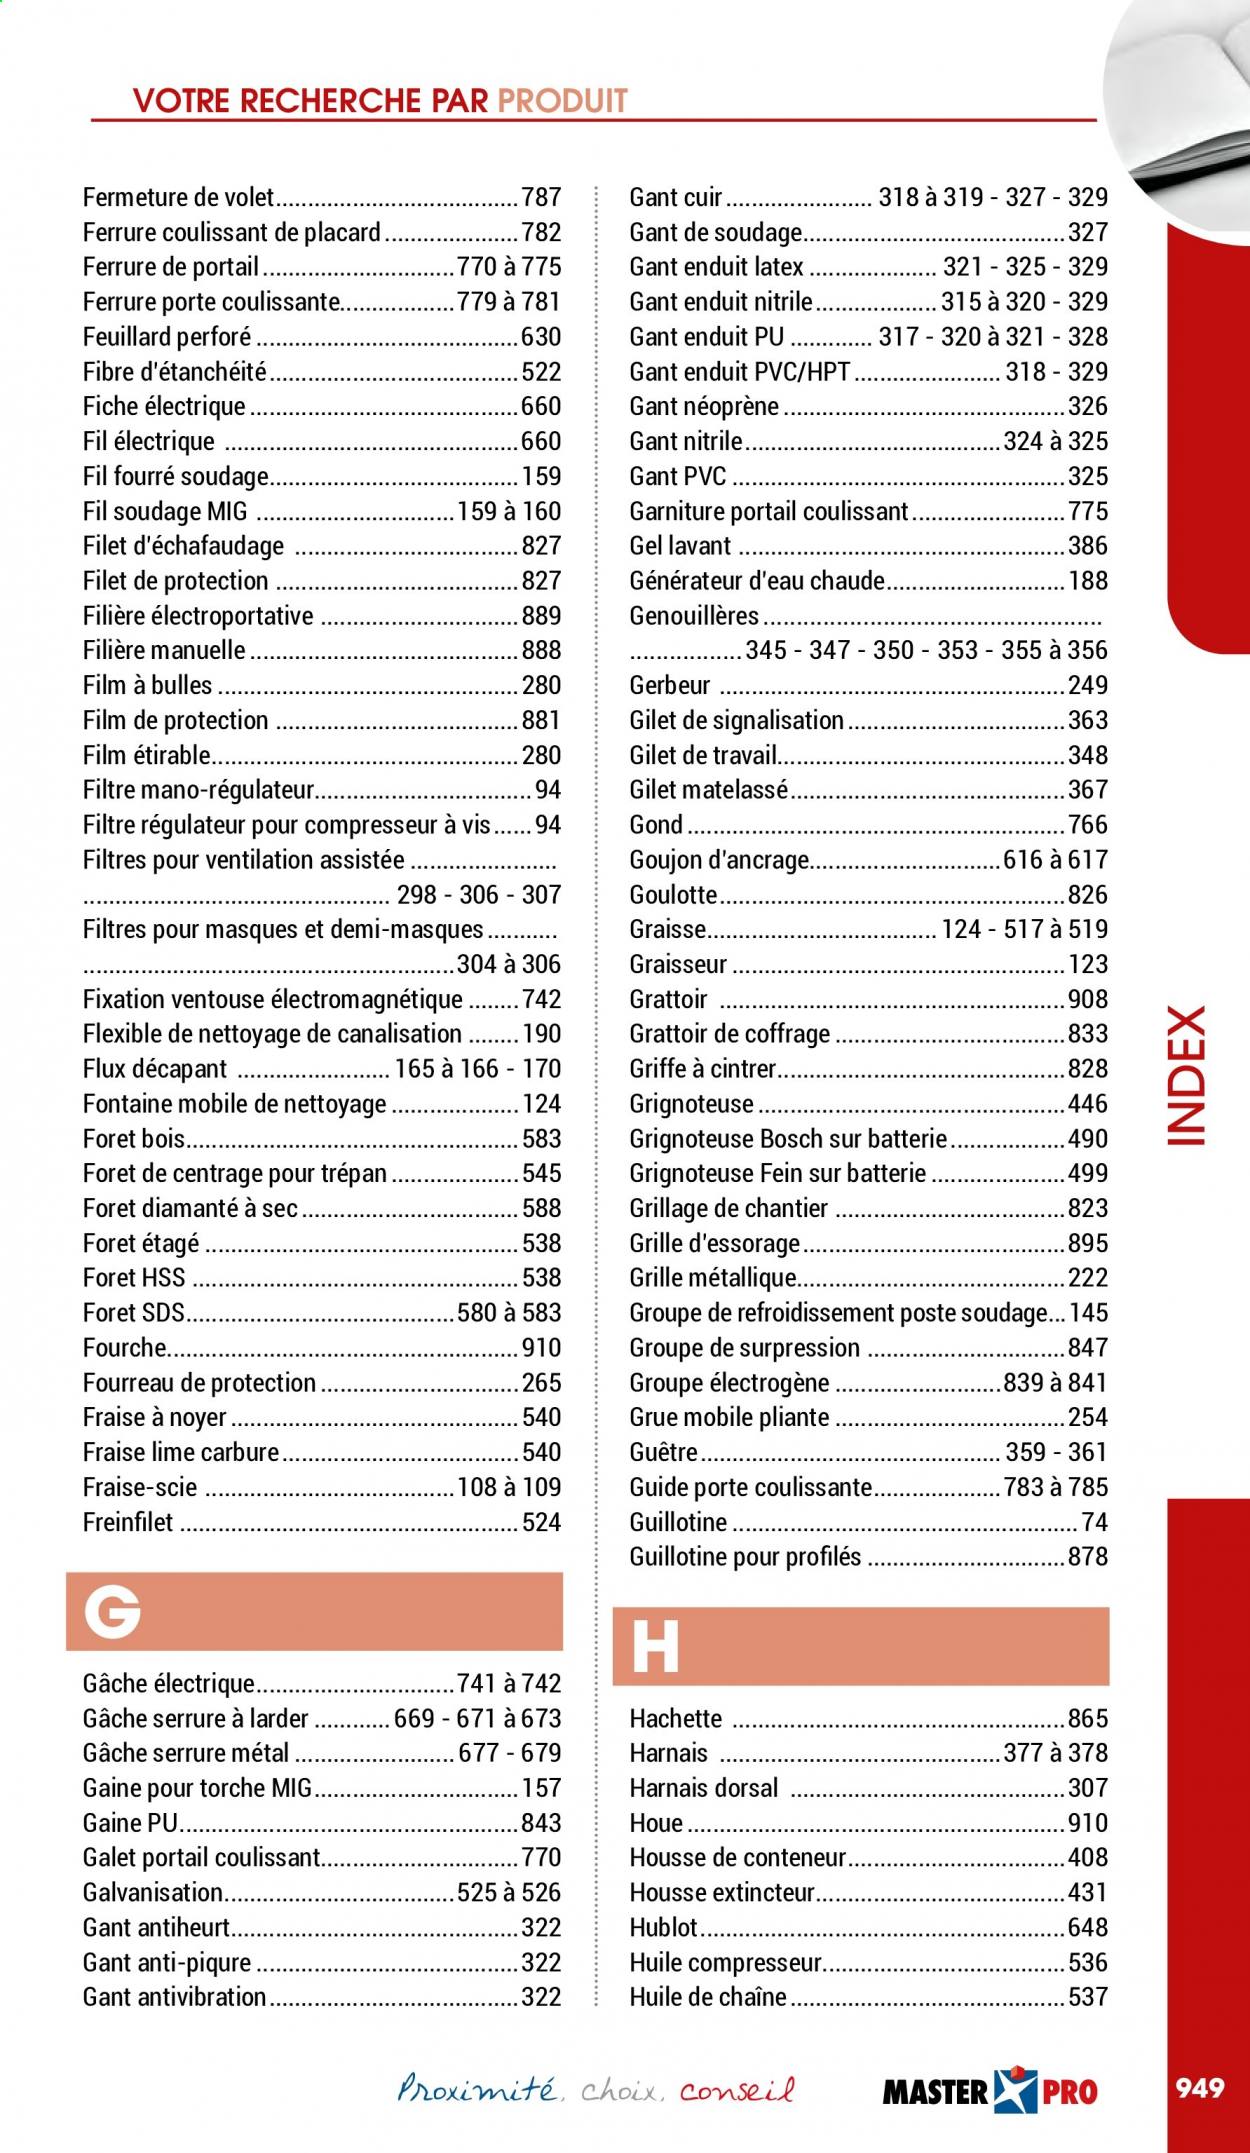 thumbnail - Catalogue Master Pro - 01/01/2021 - 31/12/2021 - Produits soldés - Bosch, groupe électrogène, vis, scie, houe, compresseur. Page 951.